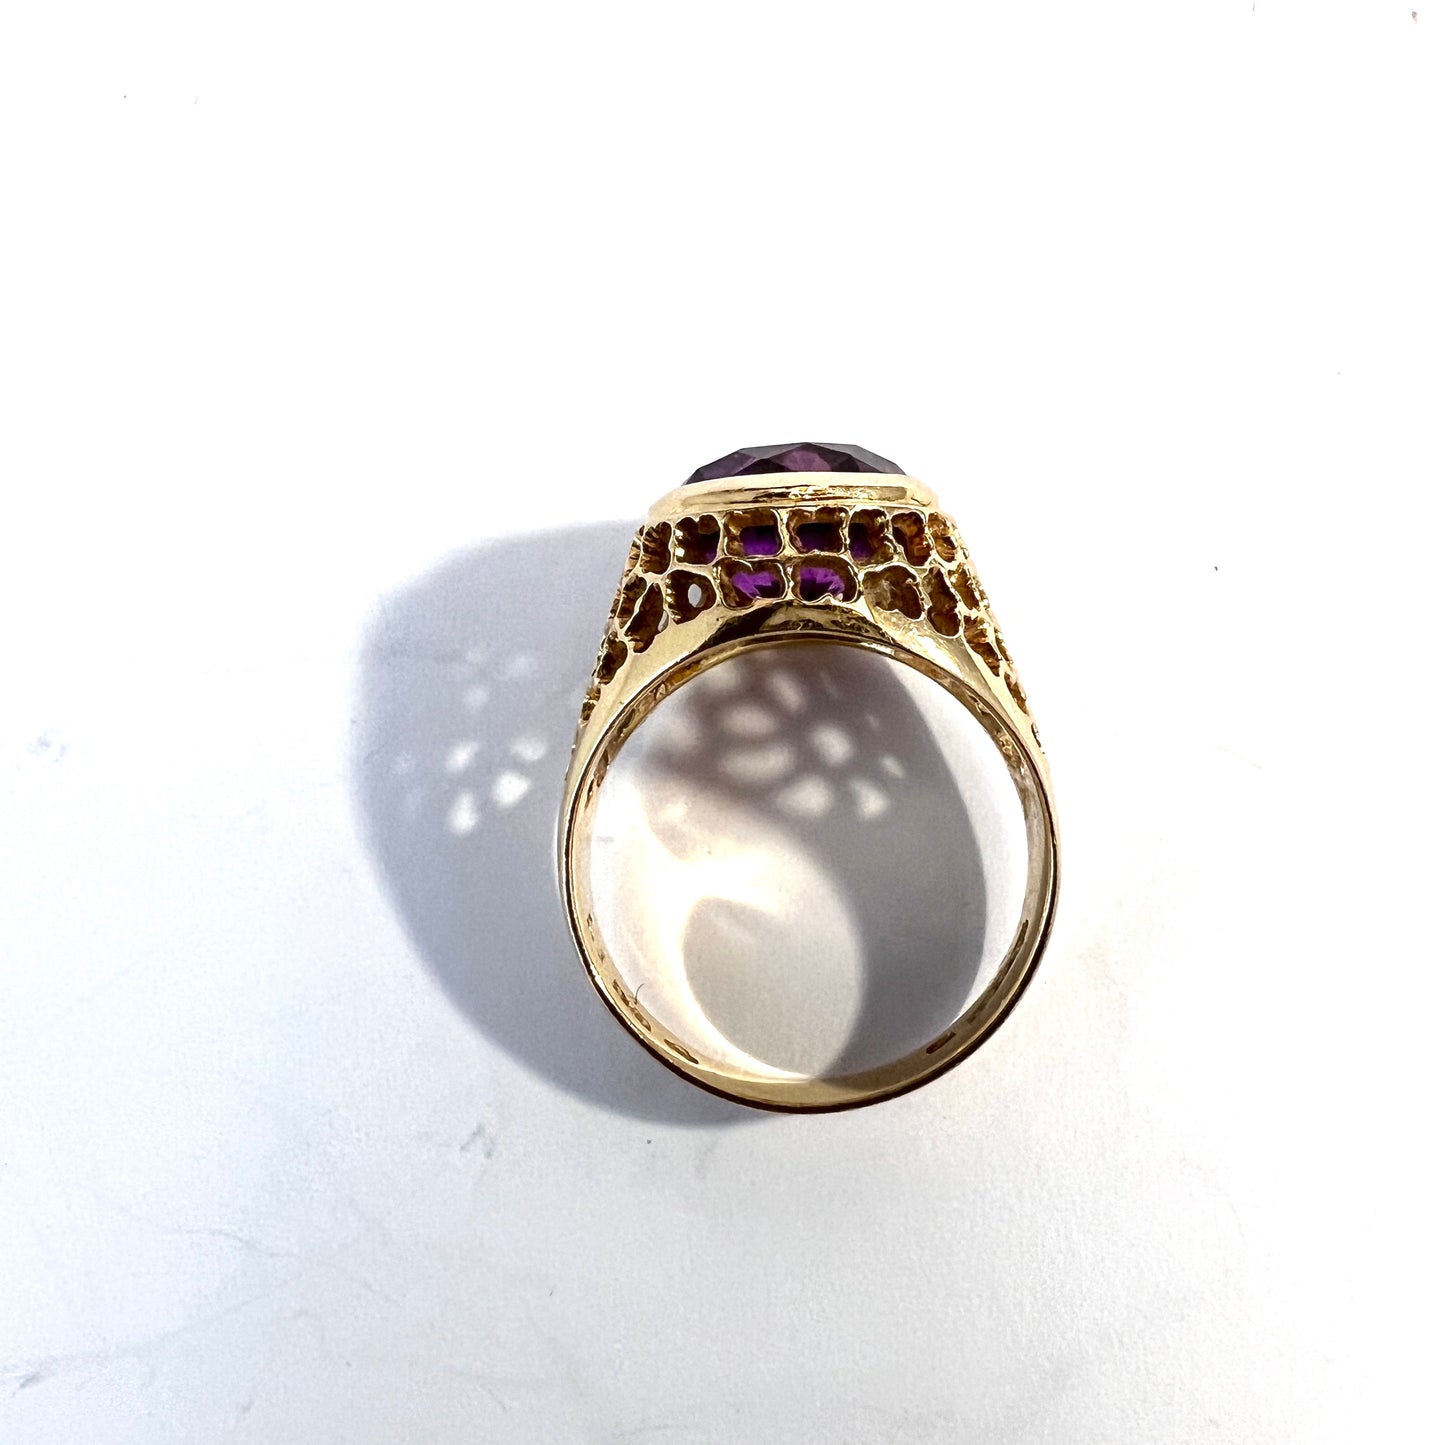 G Dahlgren, Sweden 1960s. Vintage 18k Gold Synthetic Sapphire Ring.